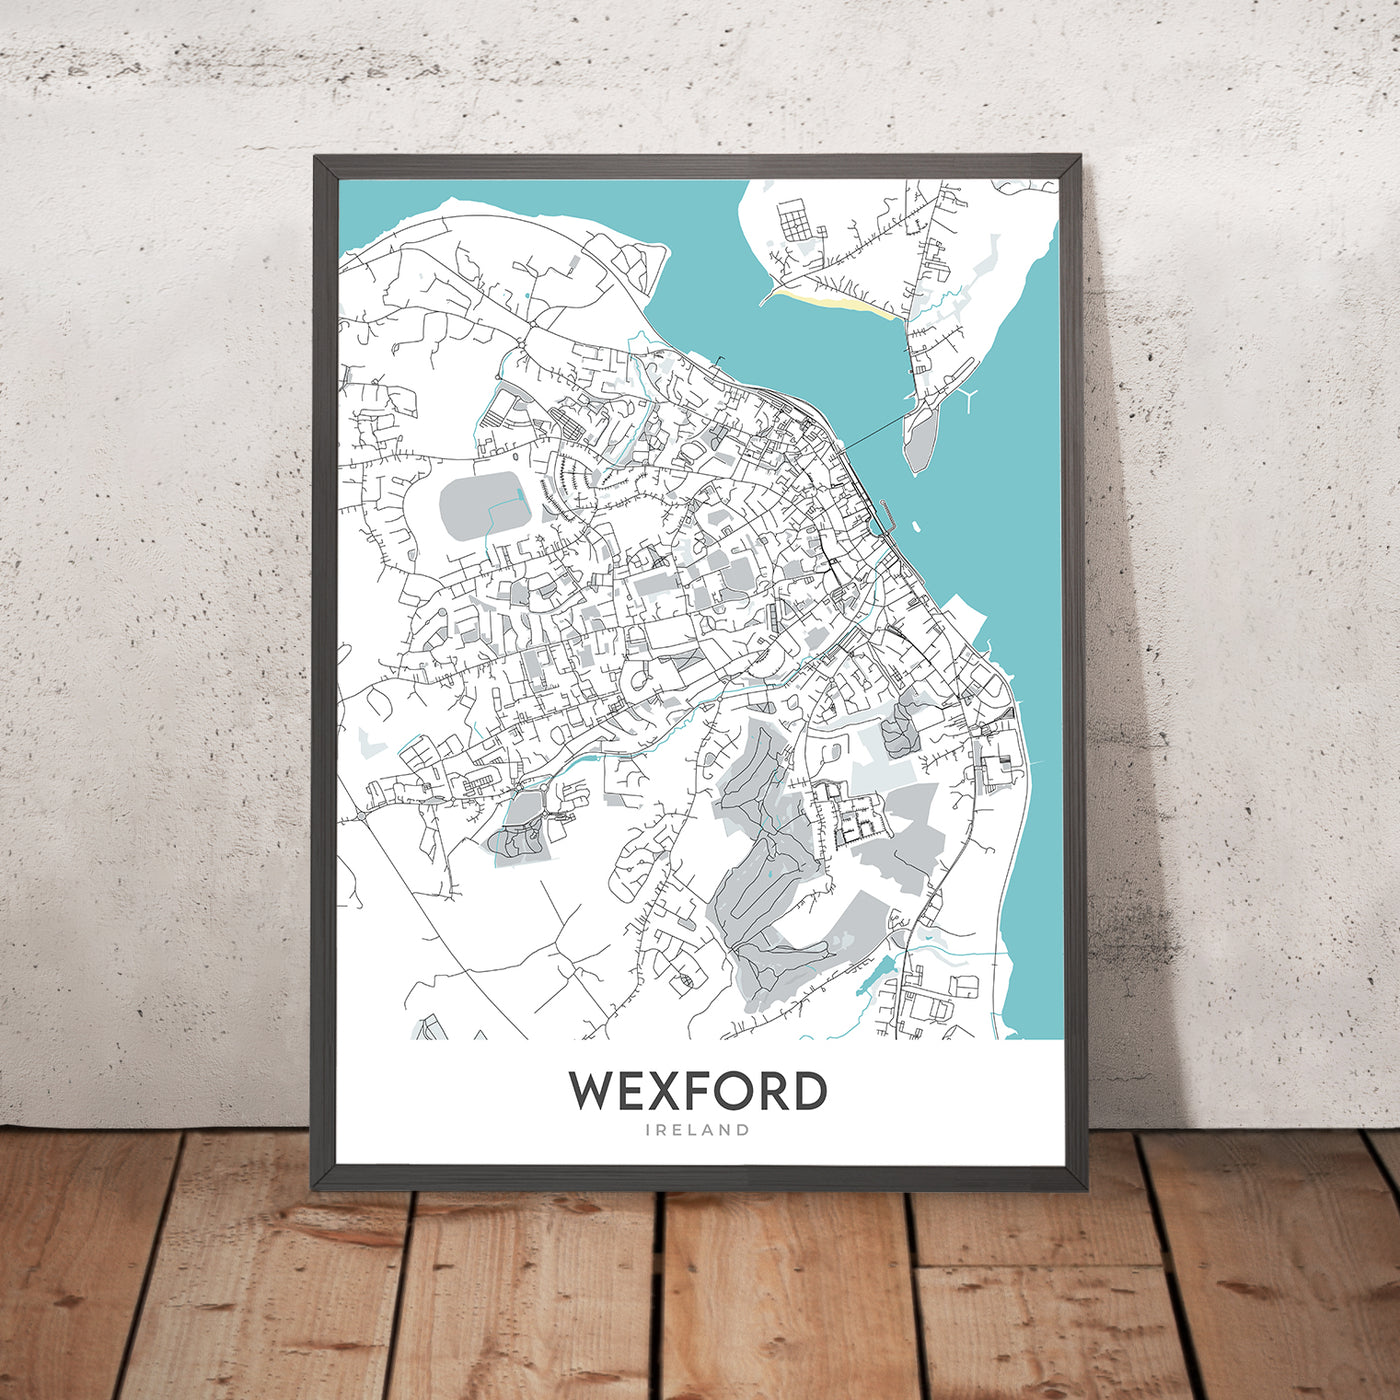 Moderner Stadtplan von Wexford, Irland: Wexford Town, Enniscorthy Castle, Curracloe Beach, Hook Lighthouse, Irish National Heritage Park